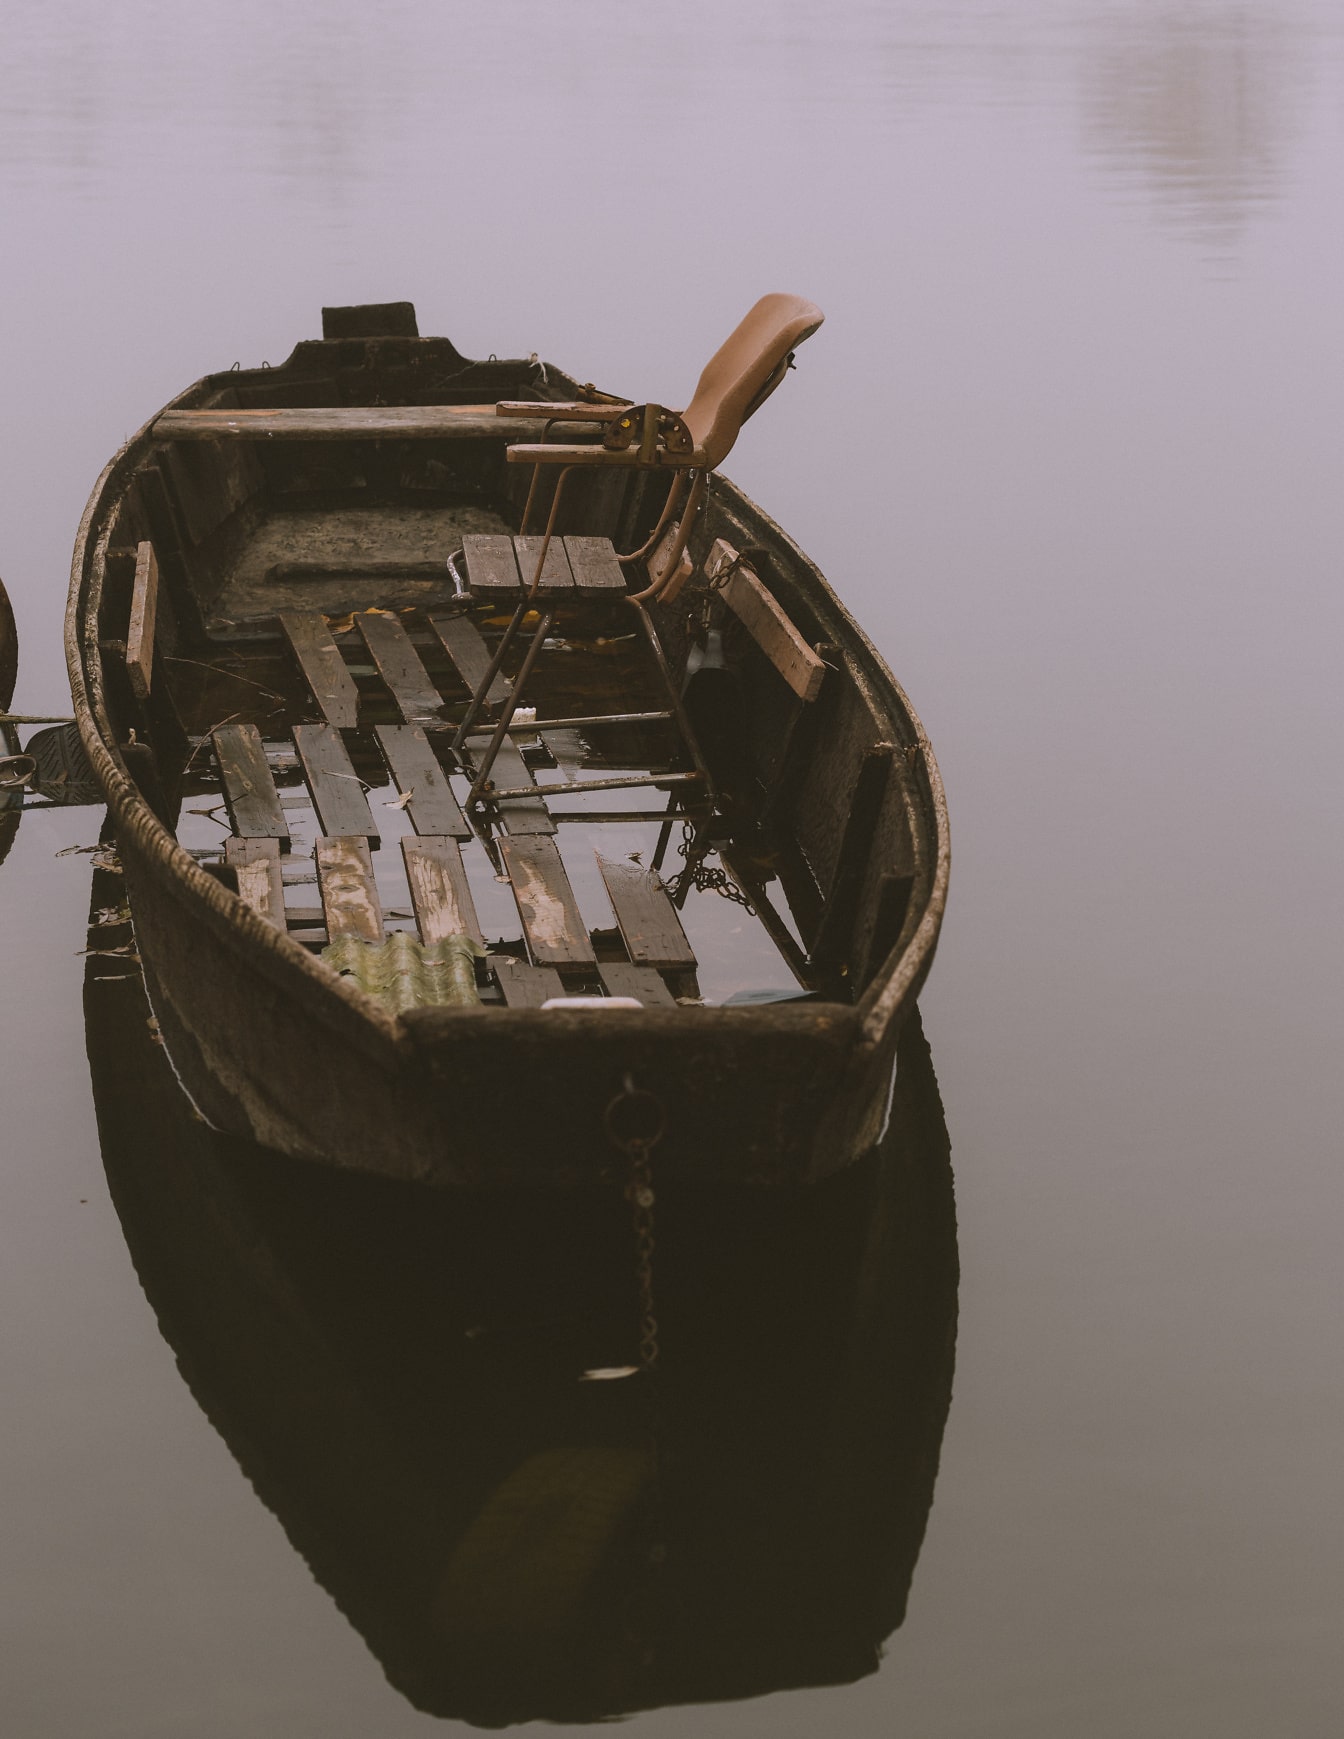 İçinde sandalye bulunan su üzerinde eski ahşap tekne